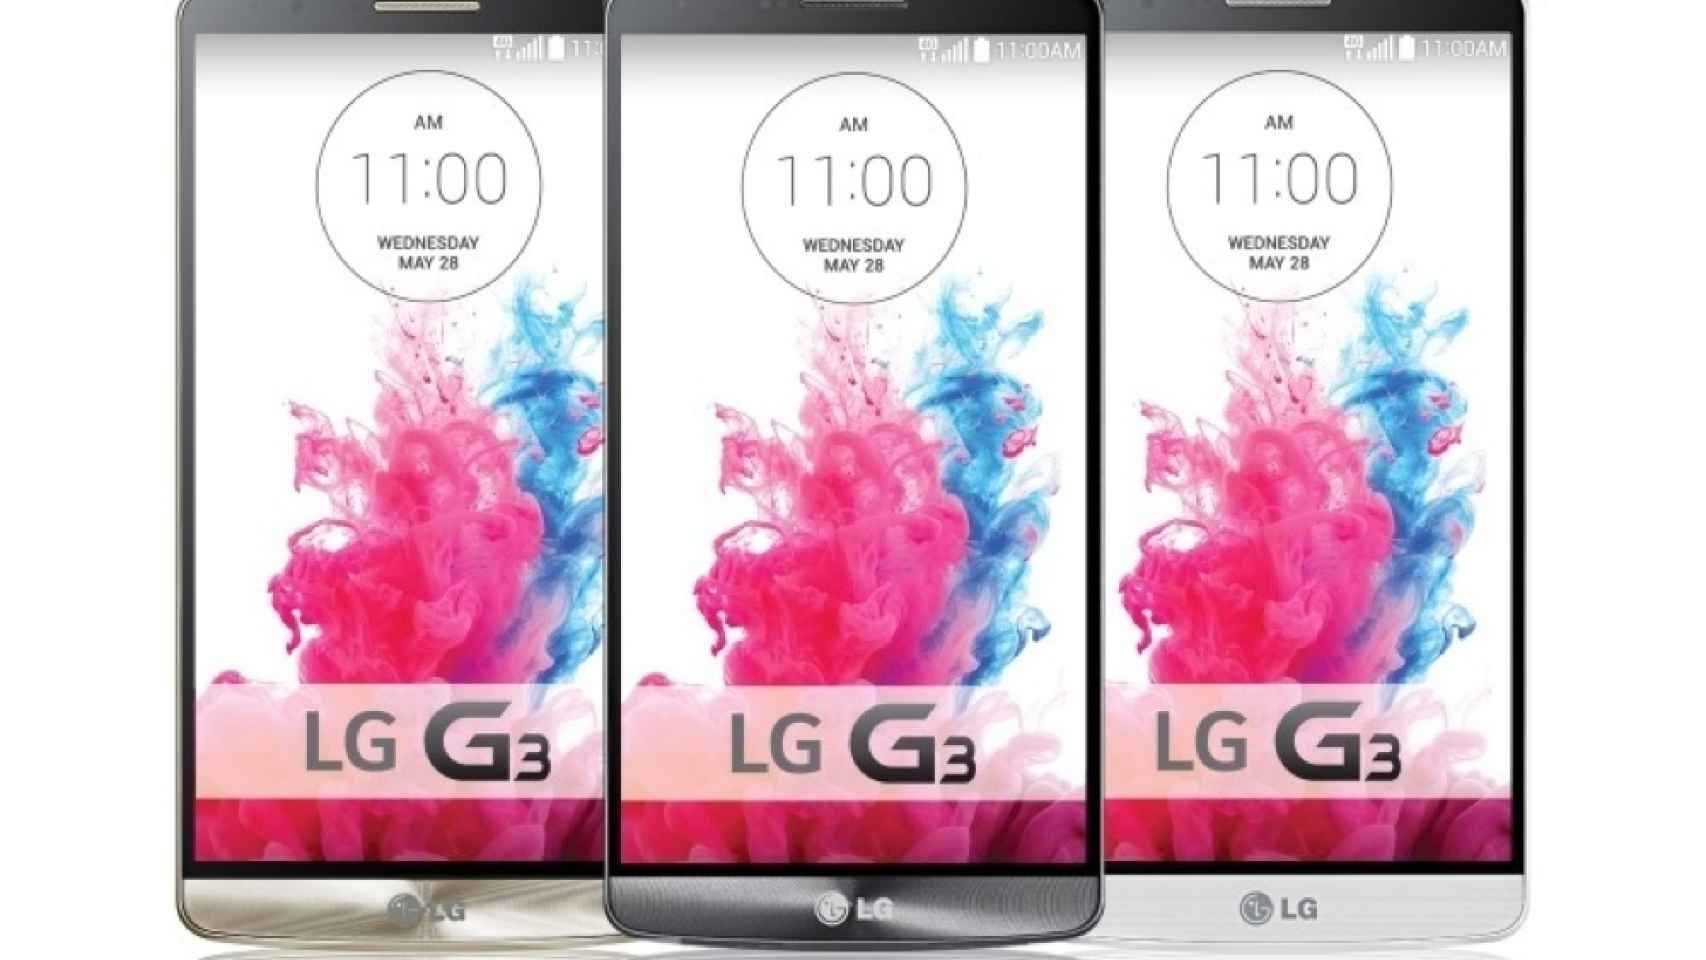 Ya puedes comprar el LG G3 en pre-venta